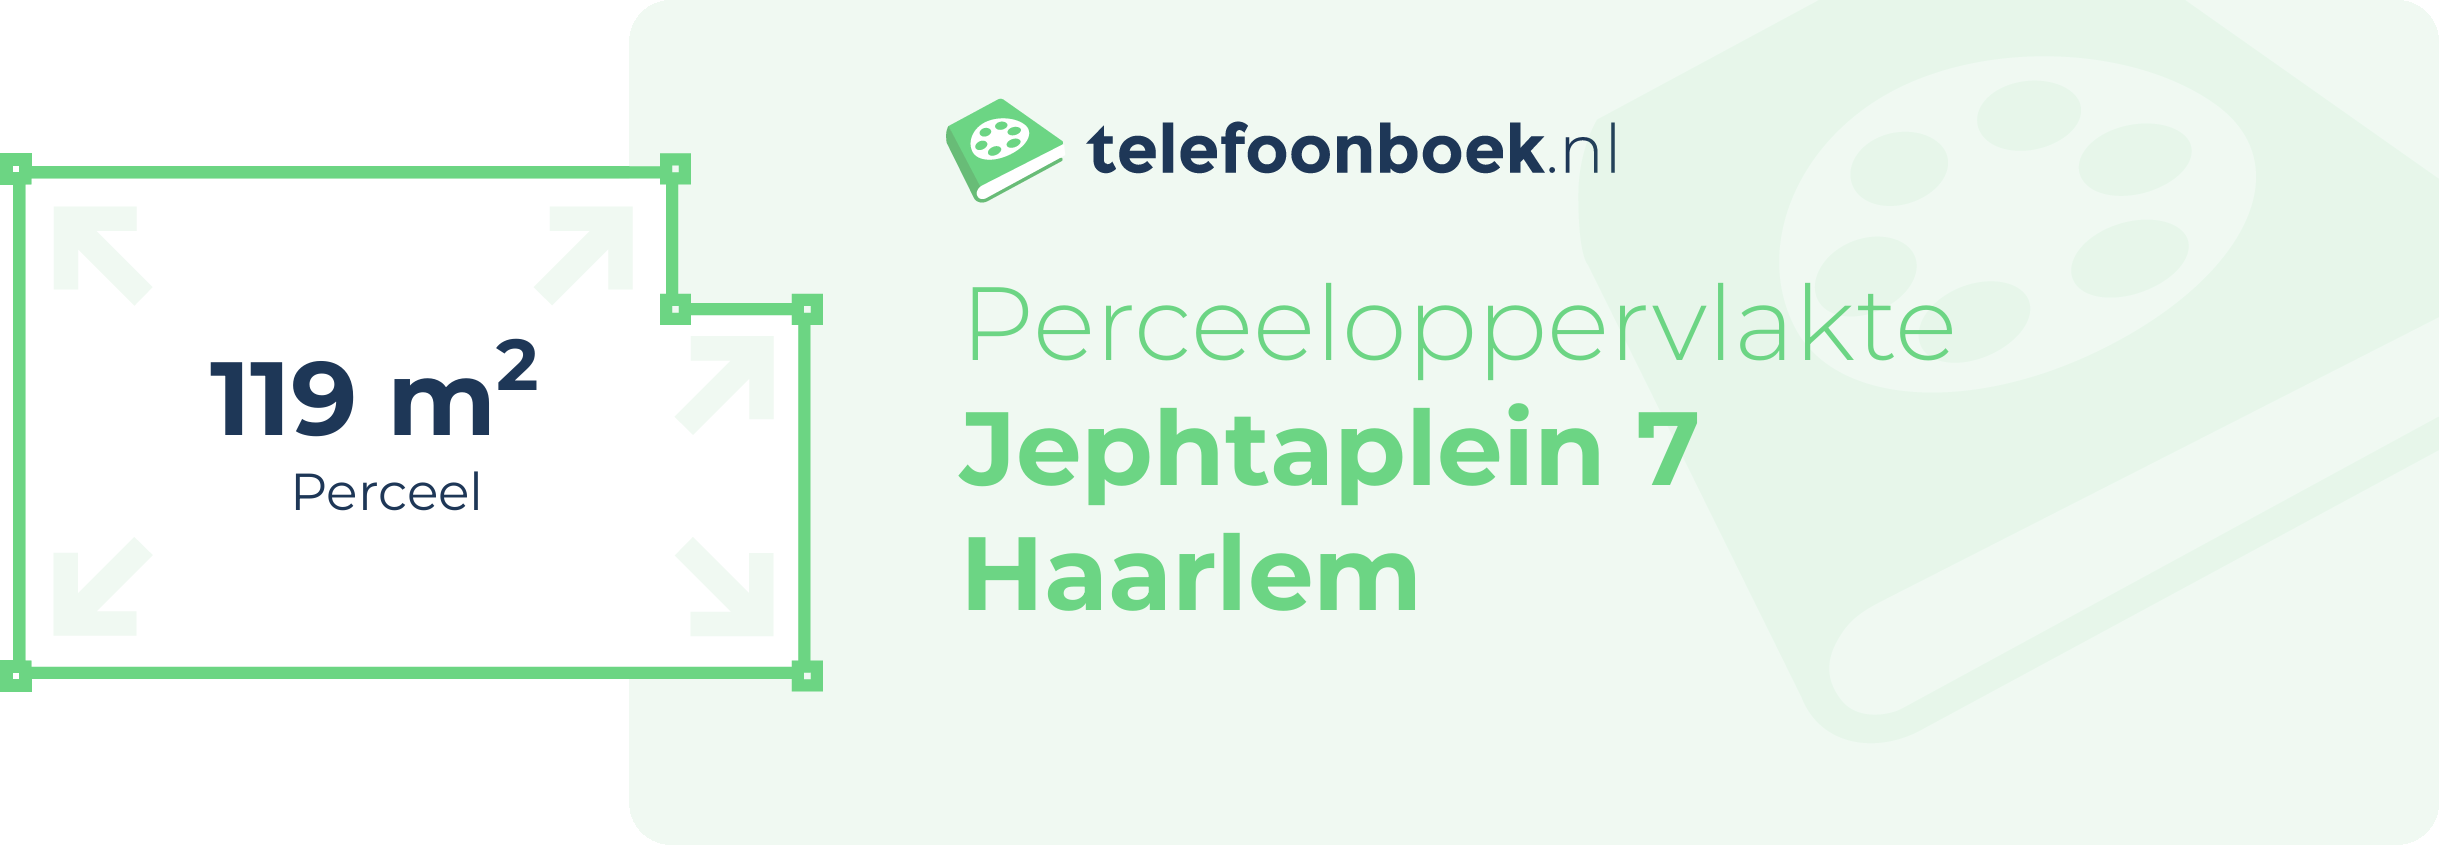 Perceeloppervlakte Jephtaplein 7 Haarlem